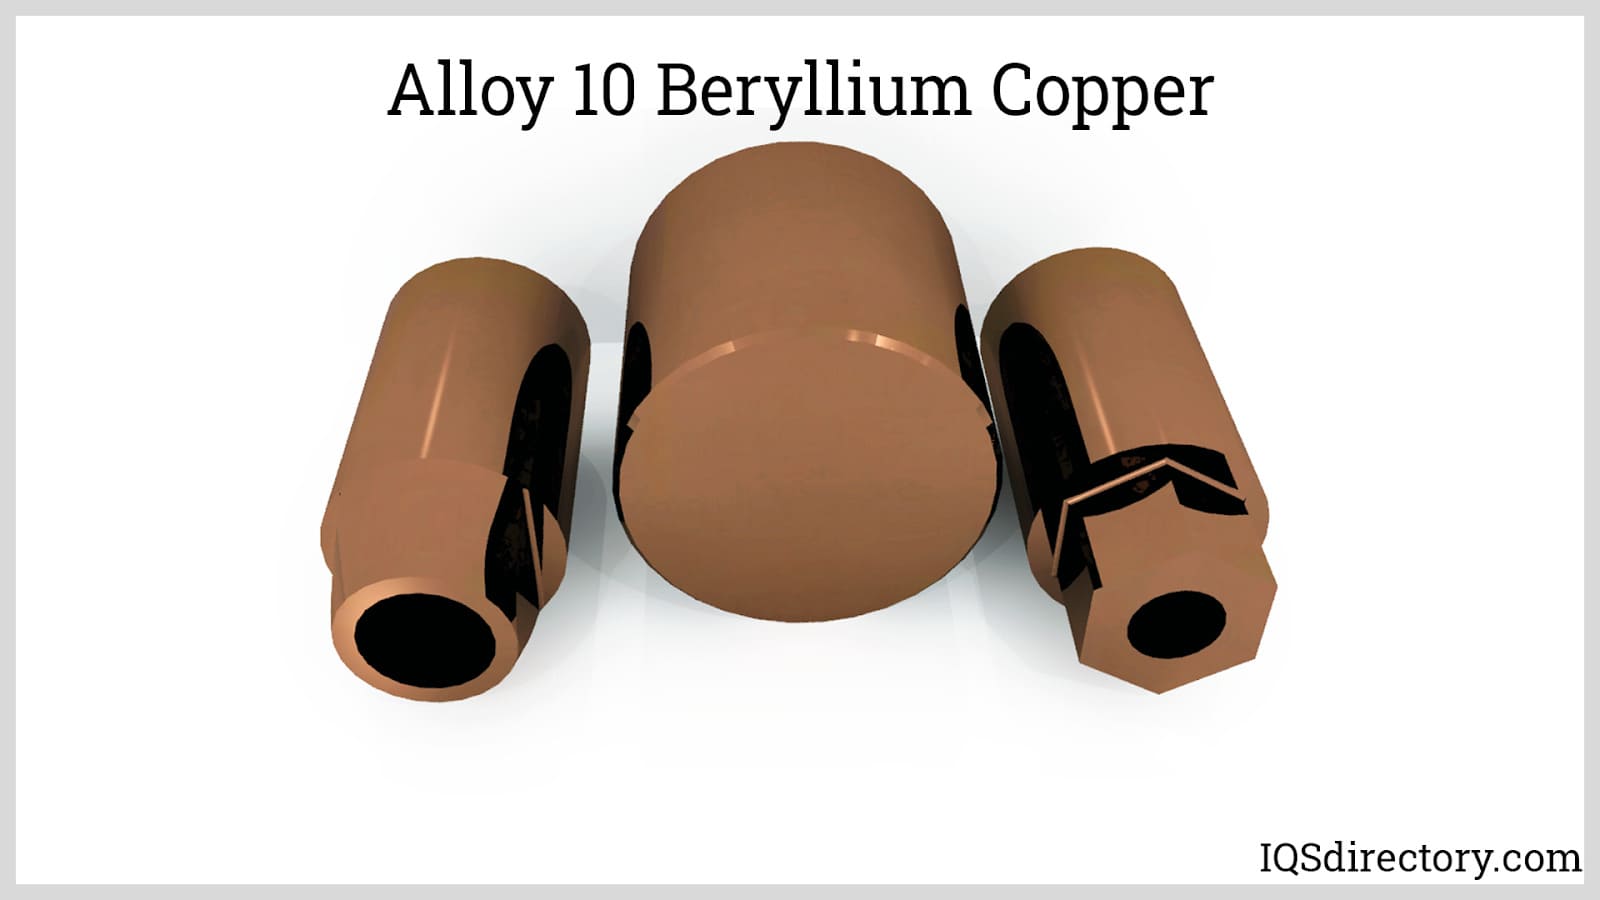 Alloy 10 Beryllium Copper